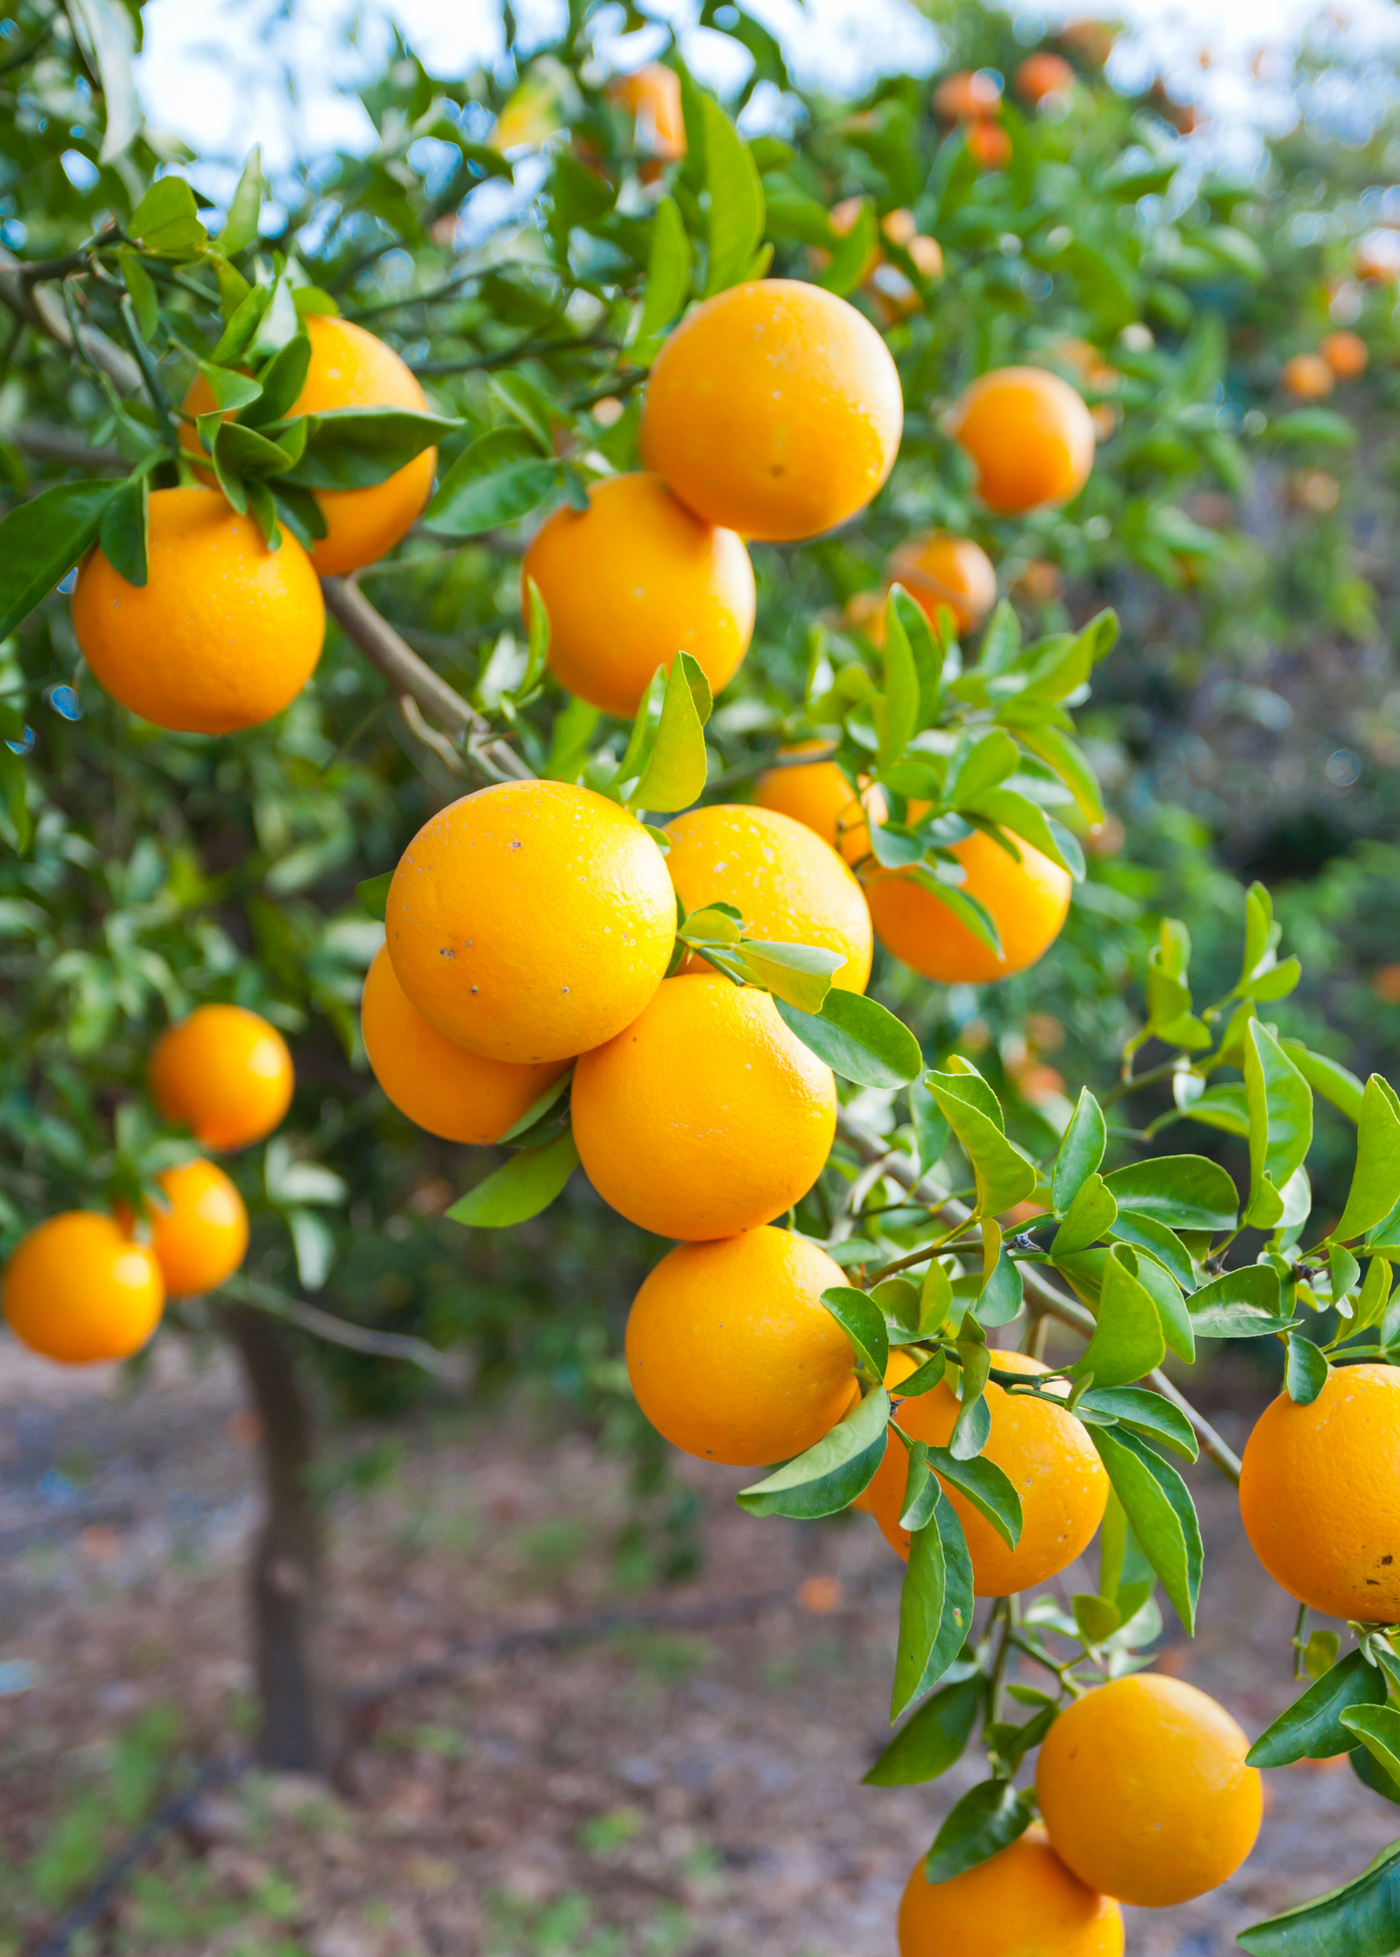 Citrus BOGO - Buy One Get One Free Citrus Trees